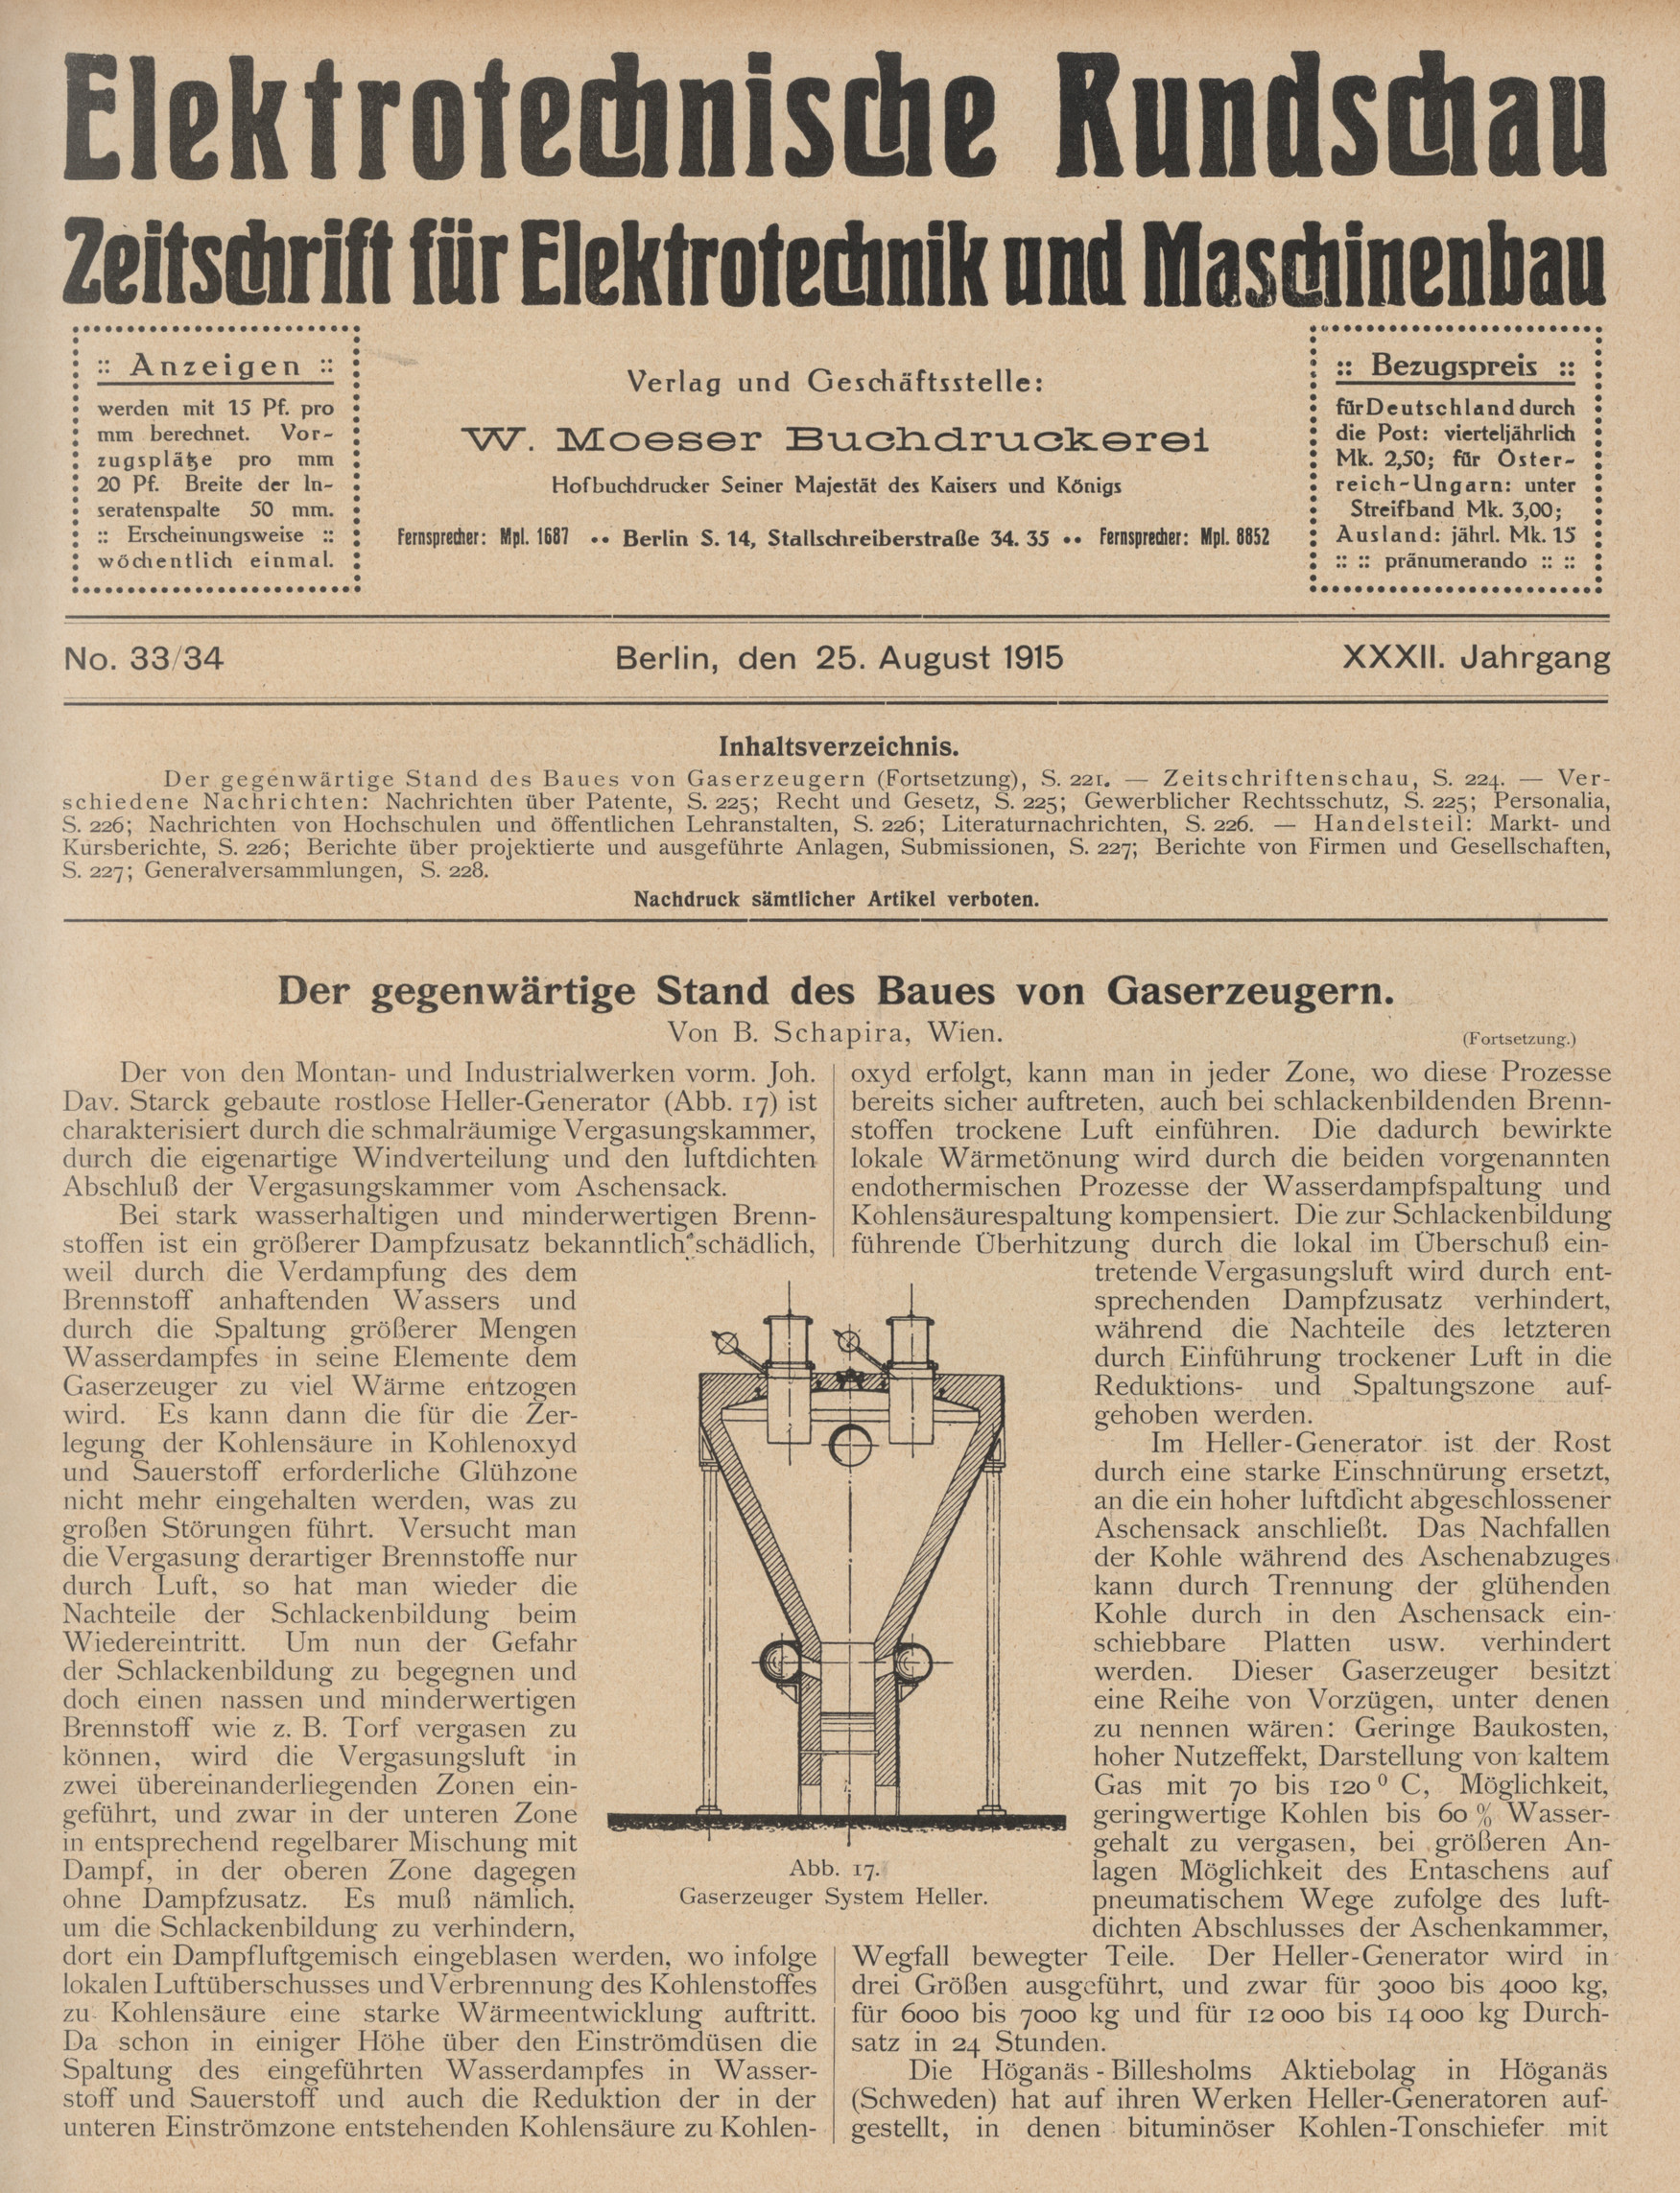 Elektrotechnische Rundschau : Zeitschrift für Elektrotechnik und Maschinenbau + Polytechnische Rundschau, No. 33/34, XXXII. Jahrgang